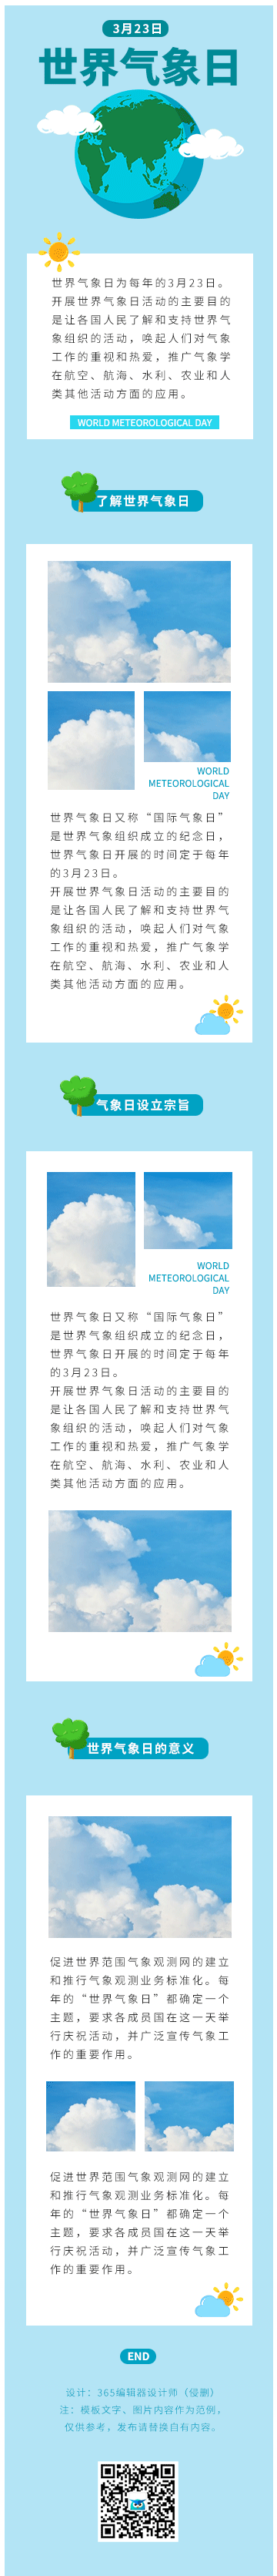 世界气象日天气环保攻略科普蓝色GIF